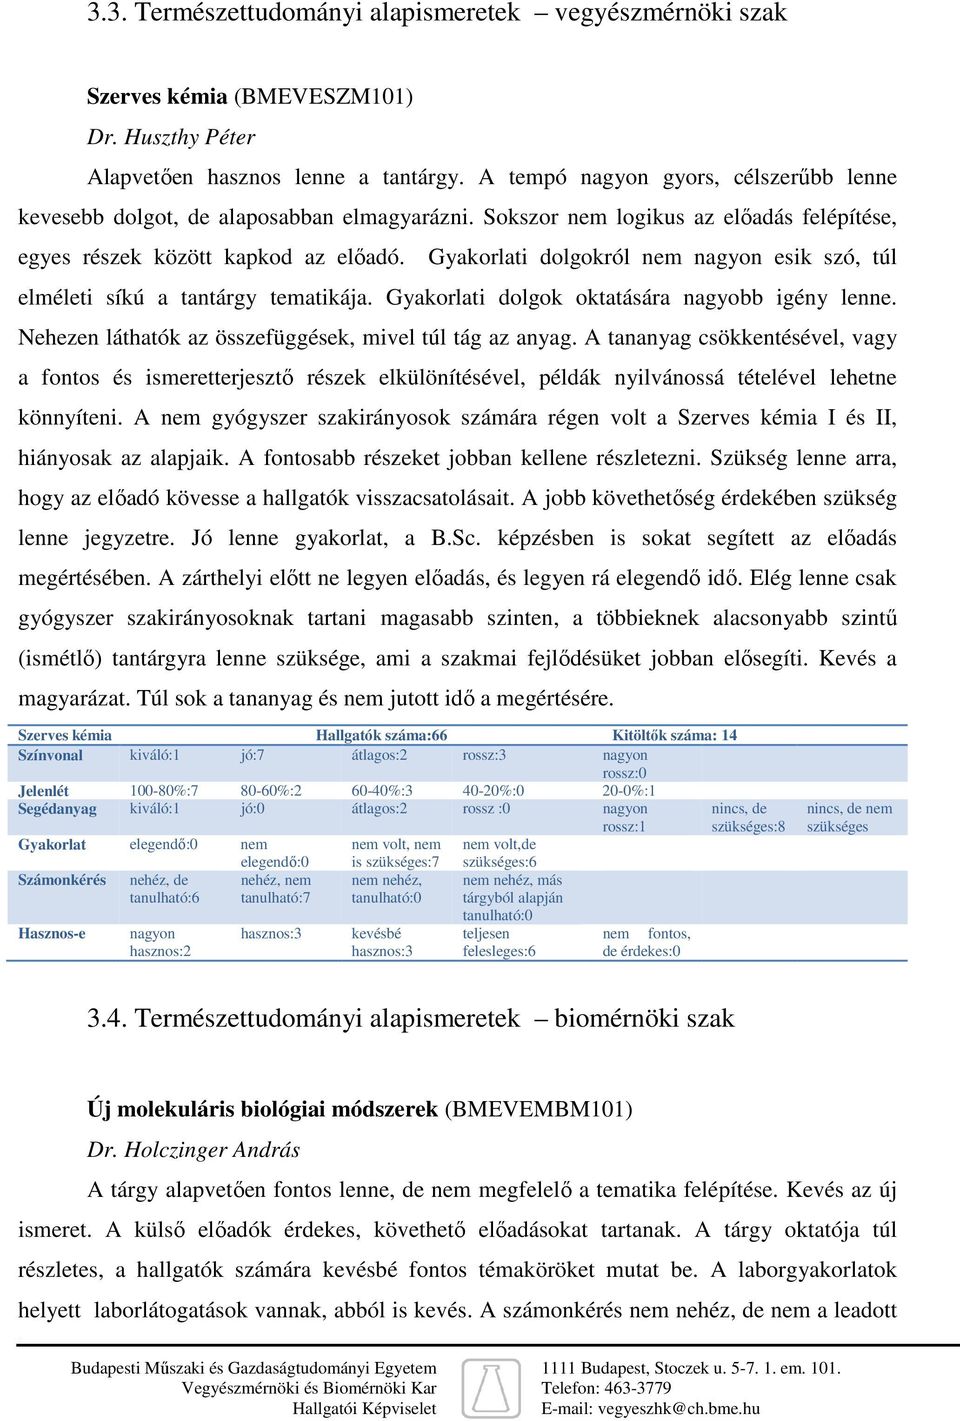 Hallgatói vélemény a Vegyészmérnöki és Biomérnöki Kar M.Sc. képzéséről -  PDF Ingyenes letöltés